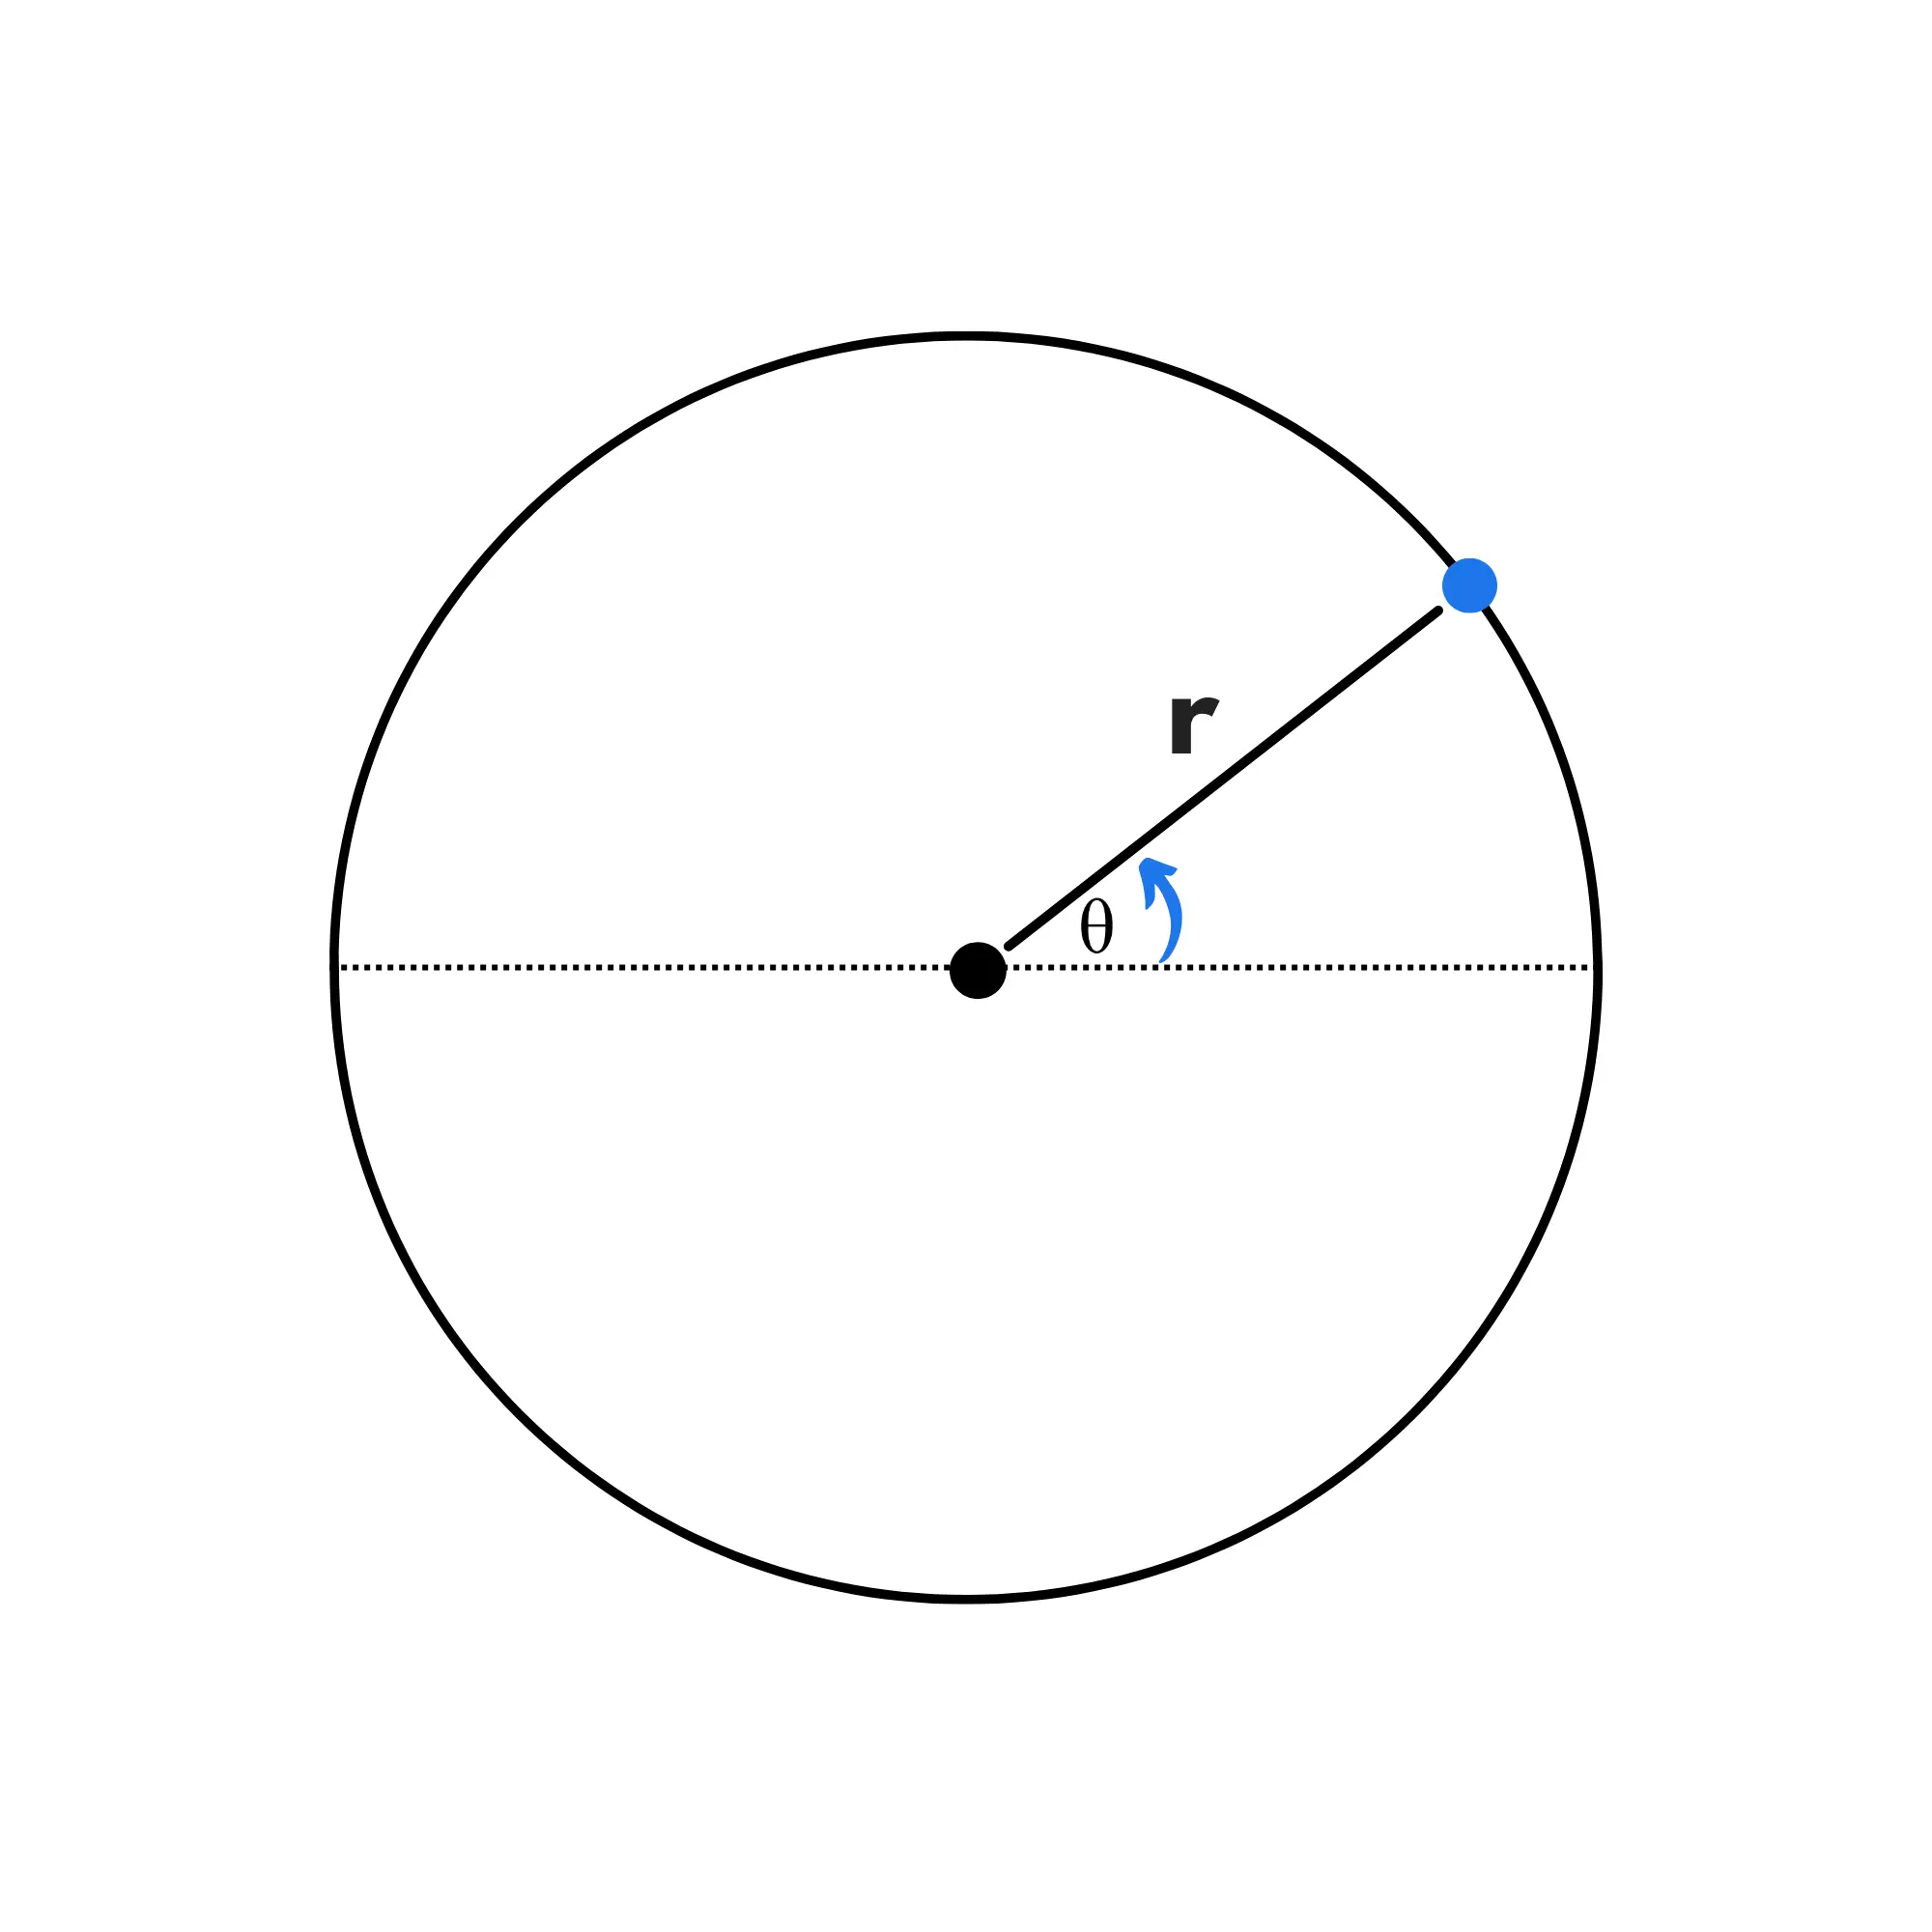 Velocità angolare Theoremz